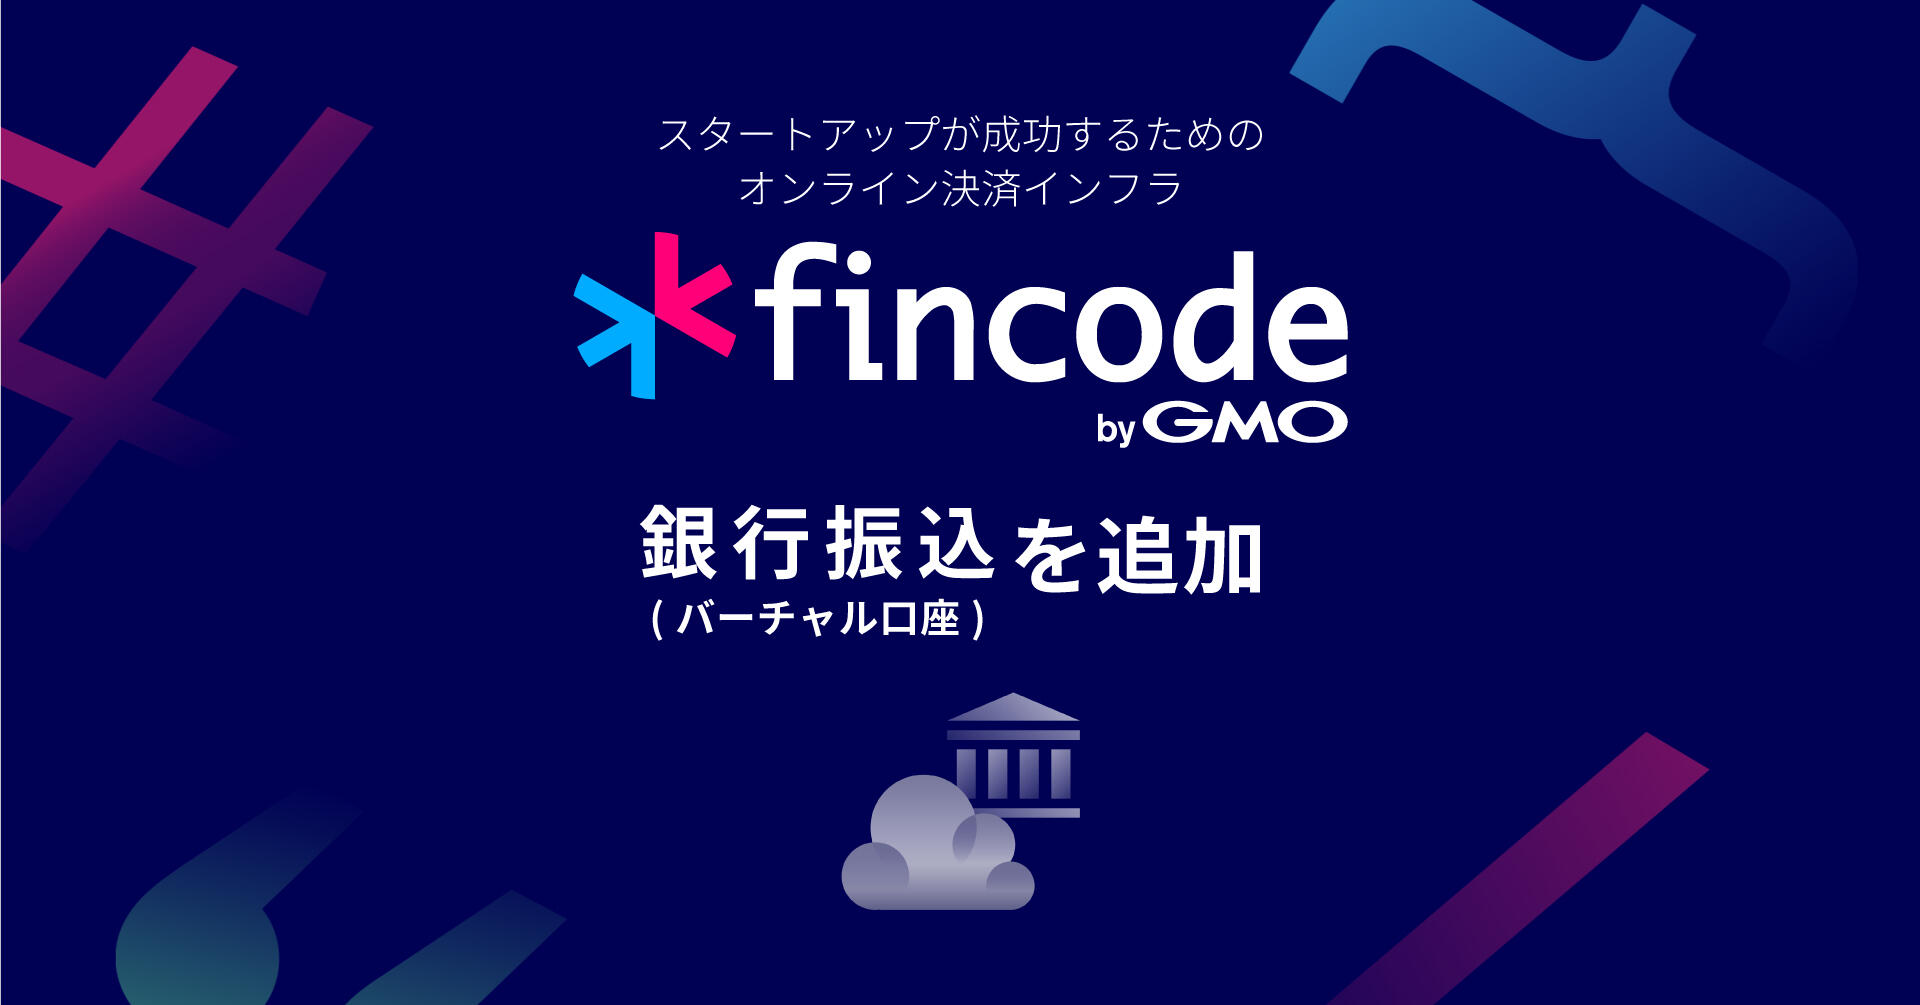 オンライン決済インフラ「fincode byGMO」、決済手段に「銀行振込（バーチャル口座）」を追加